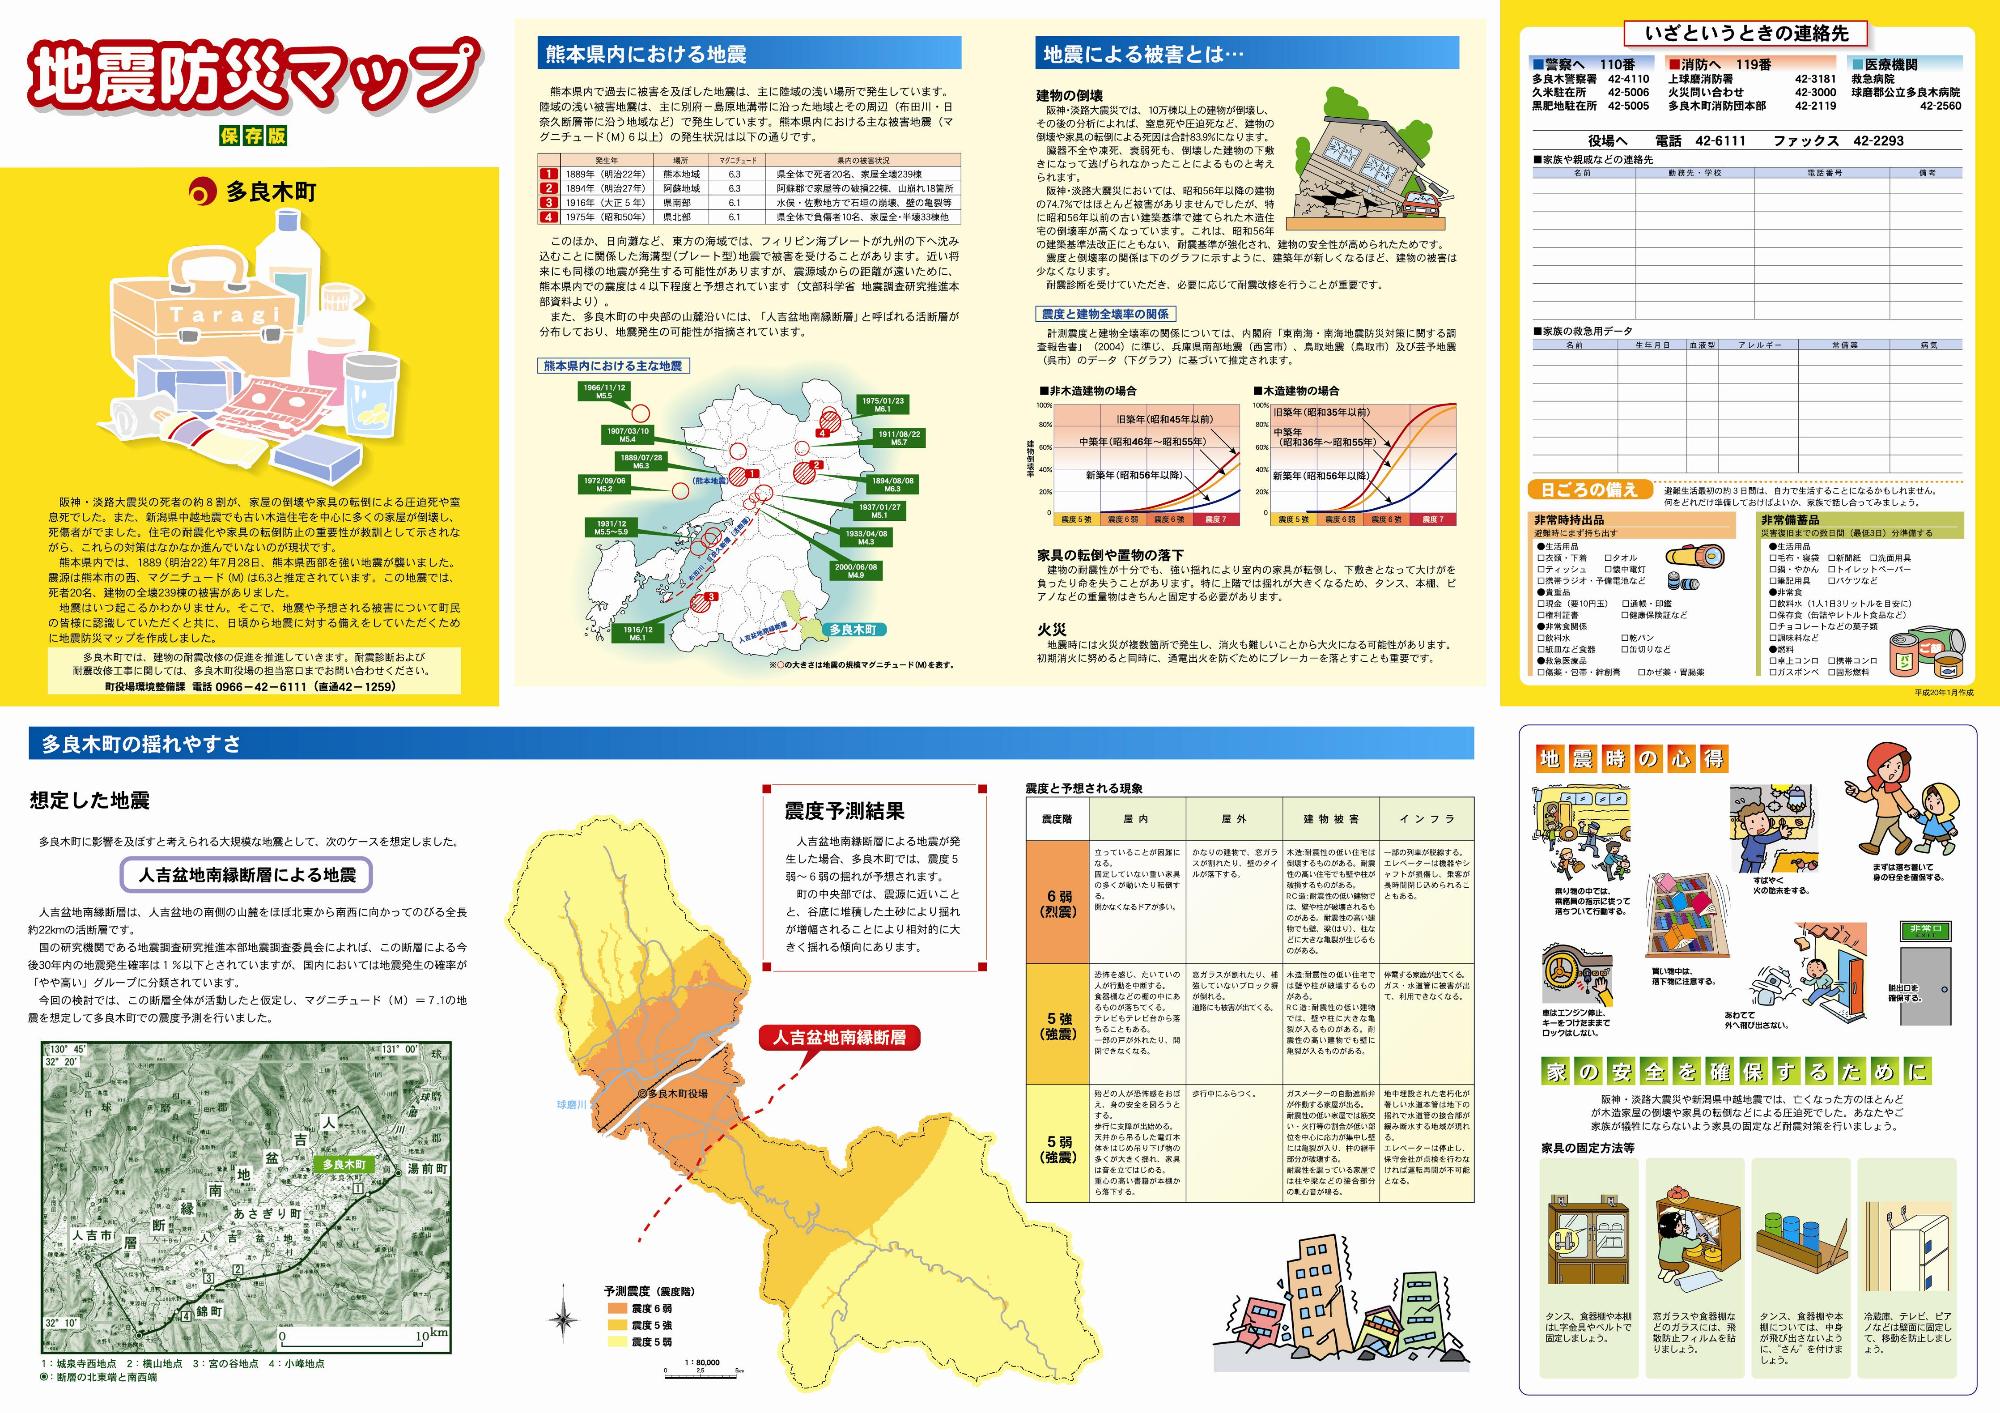 地震防災マップの表面画像。熊本県内における過去の地震や、多良木町の揺れやすさなどが紹介されています。